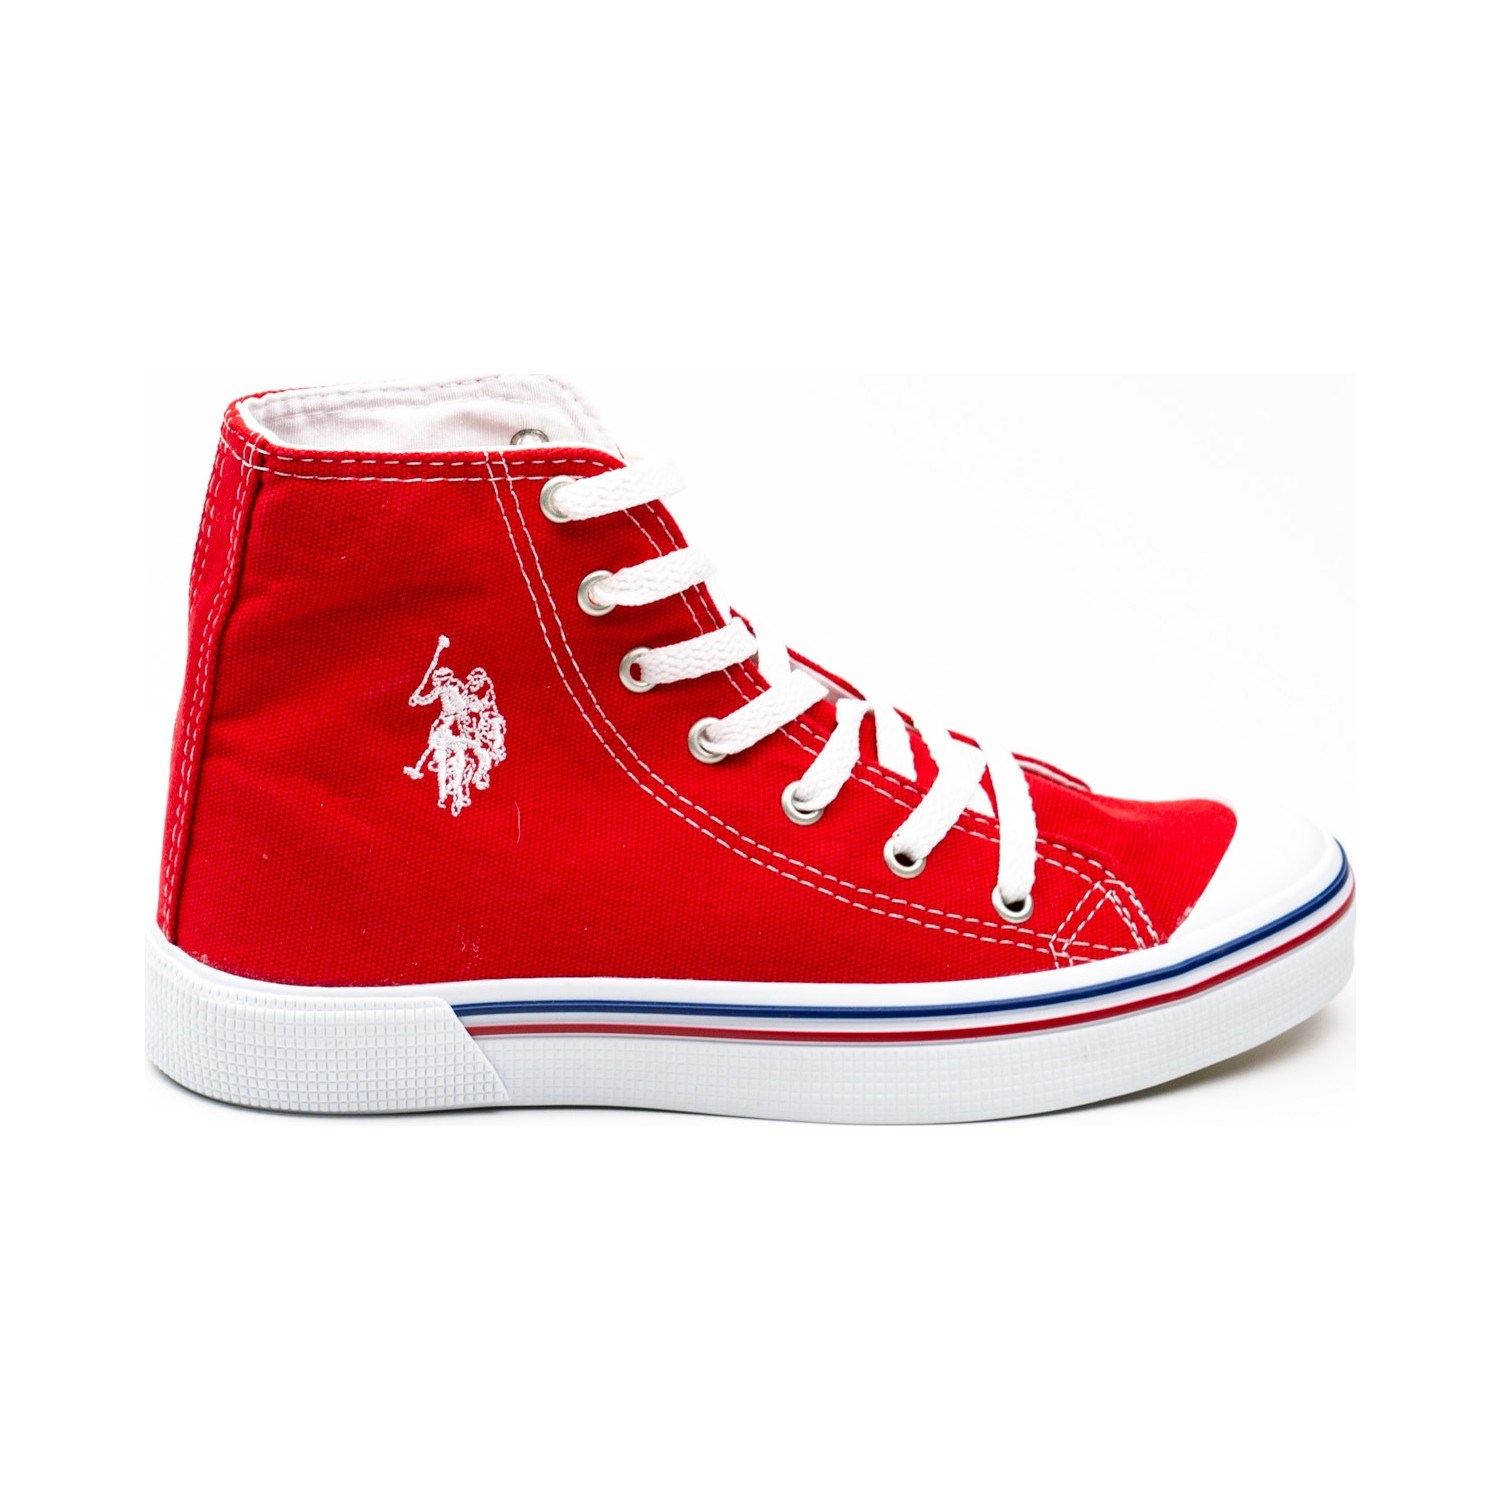 U.S Polo Kadın Ayakkabı 100910640 Kırmızı